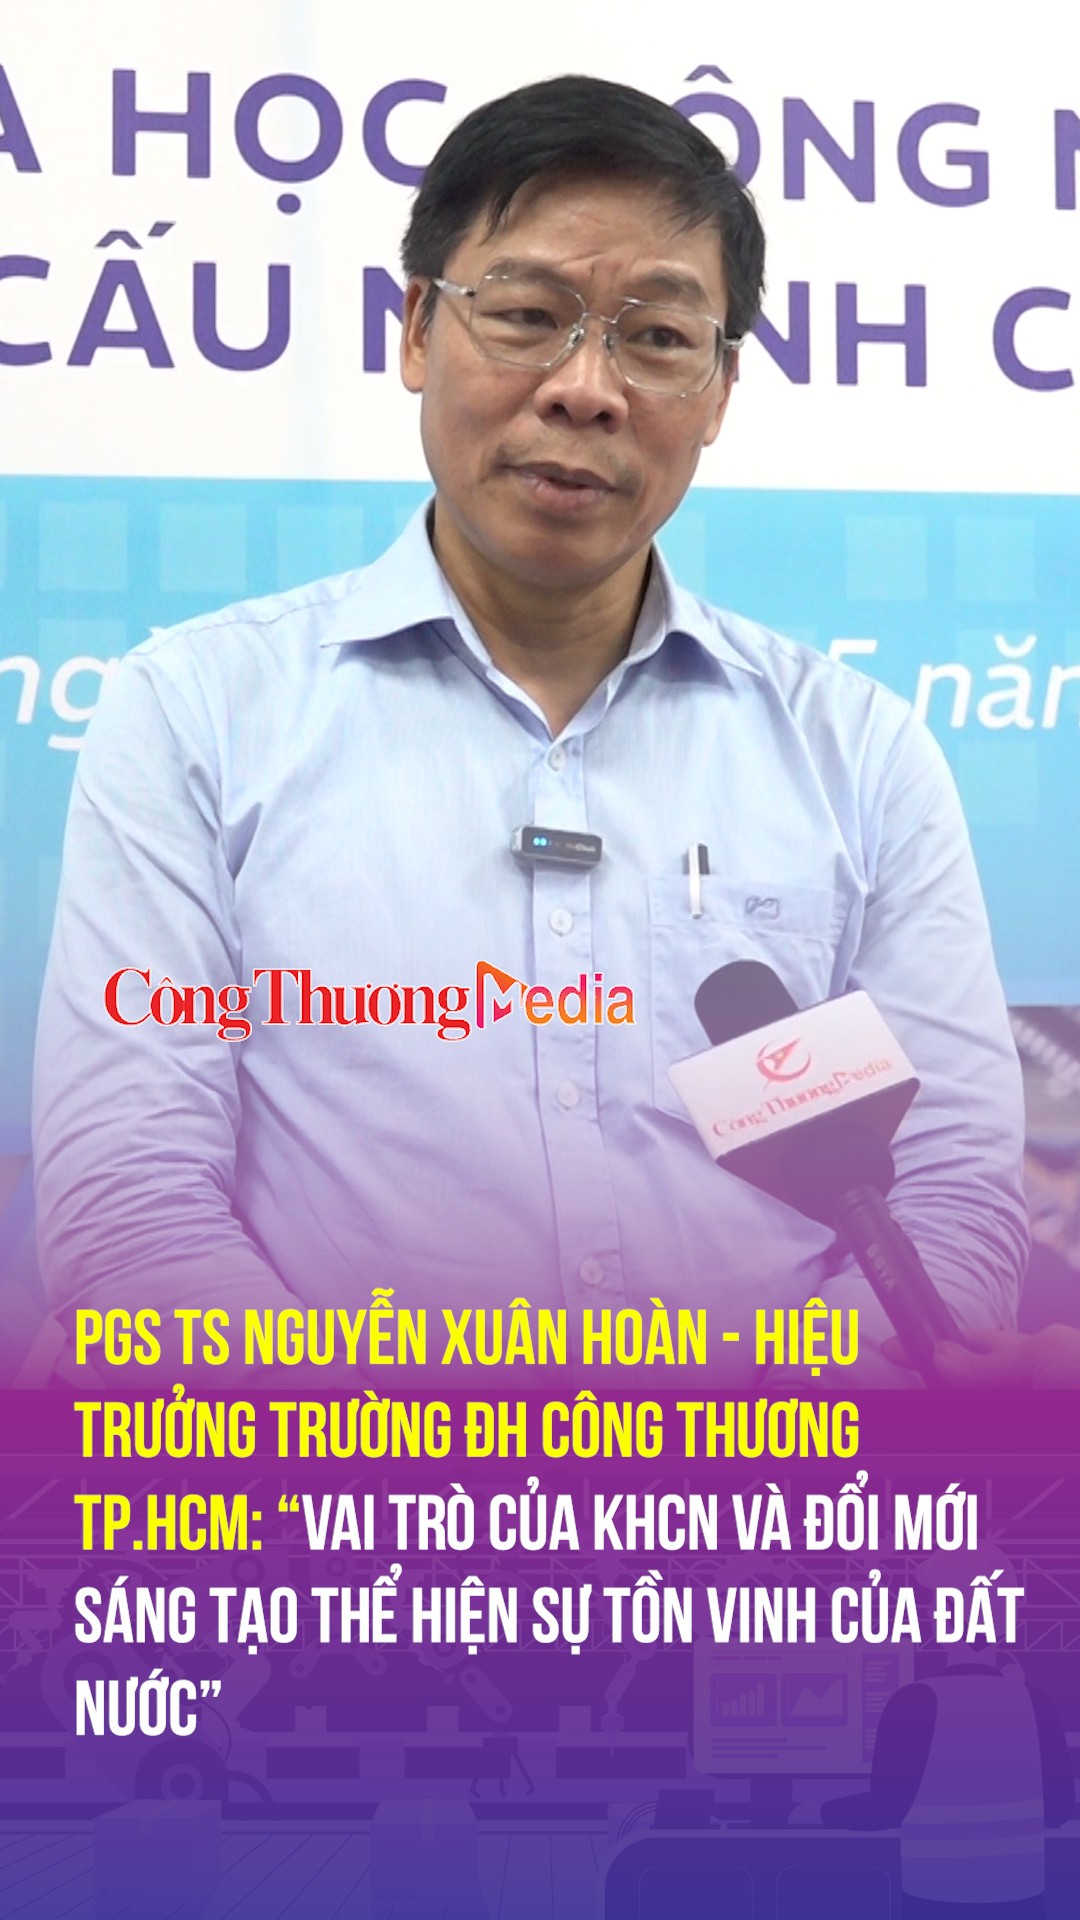 PGS TS Nguyễn Xuân Hoàn: “Vai trò của KHCN và đổi mới sáng tạo thể hiện sự tồn vinh của đất nước”